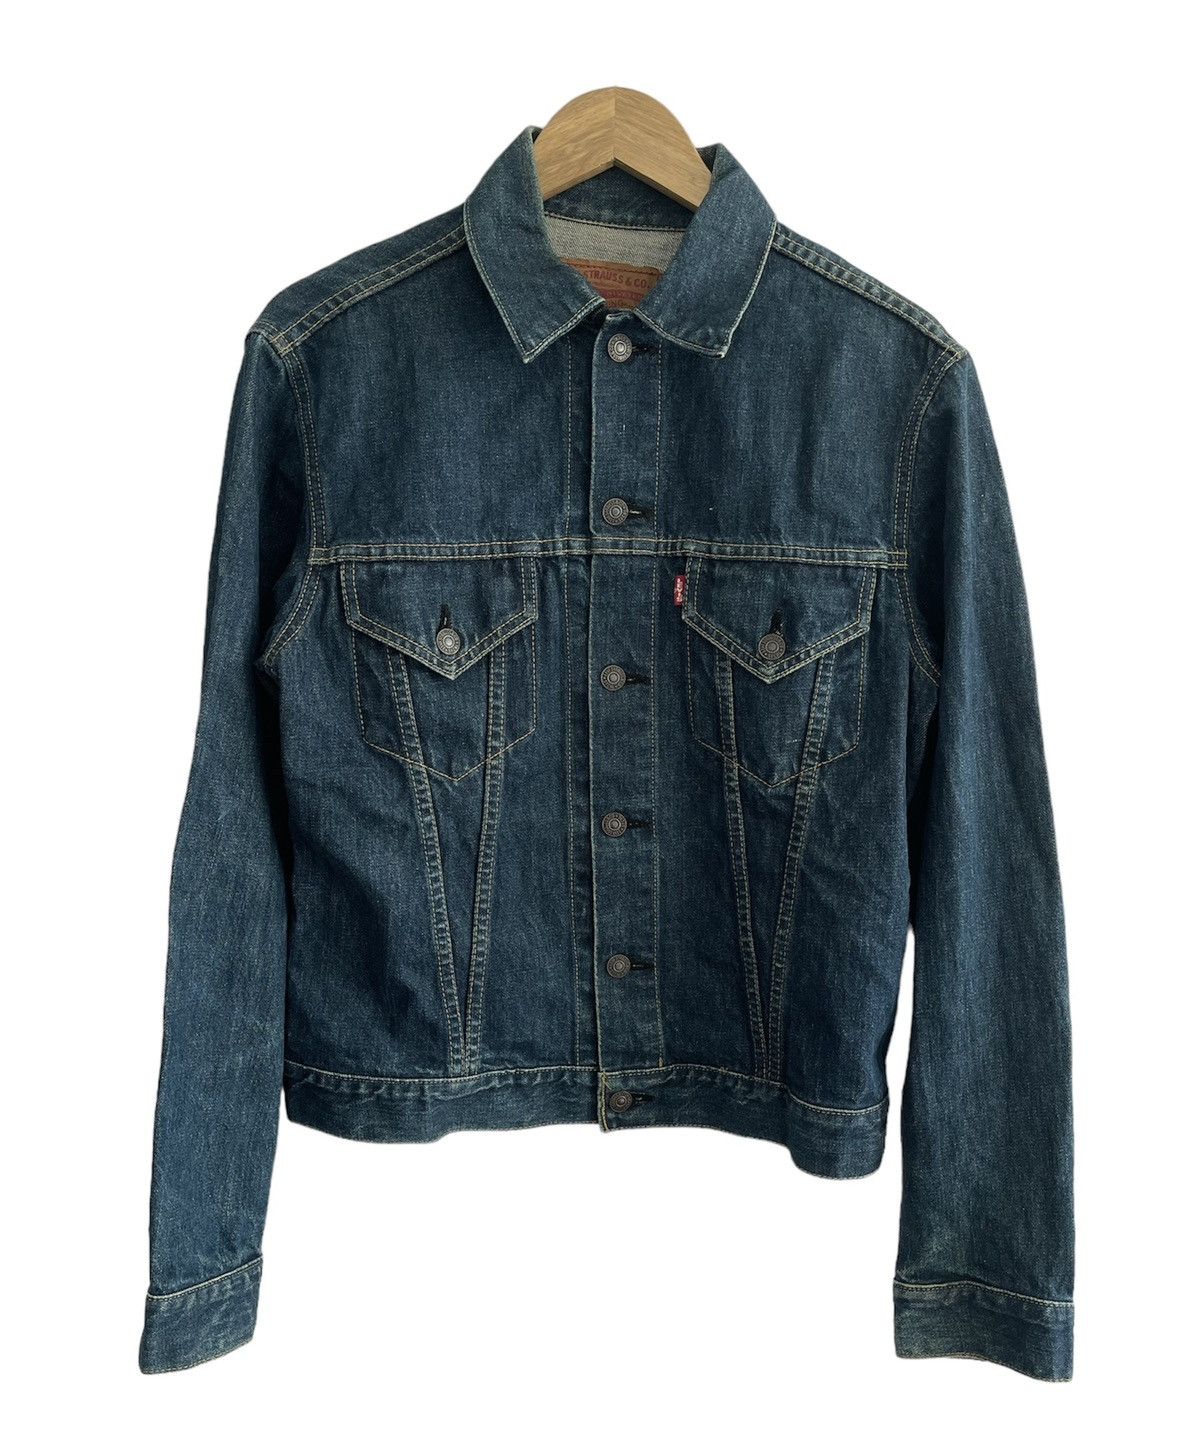 Vintage Levis Denim Jacket - 1